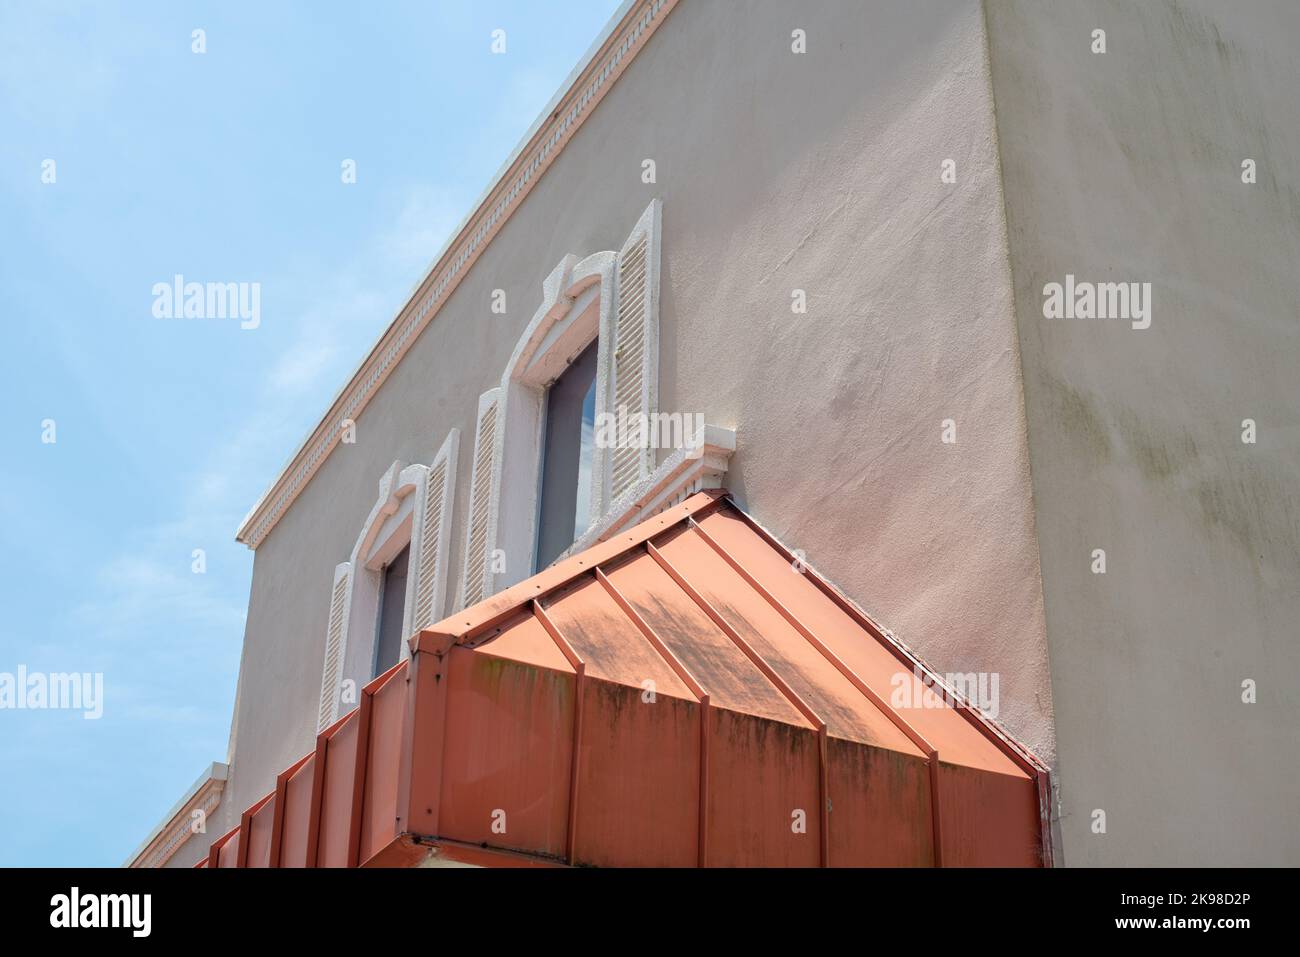 Renderizado en el exterior de un edificio histórico con dos ventanas. Hay una gruesa moldura blanca y persianas en la pared exterior y una sombra de cobre. Foto de stock